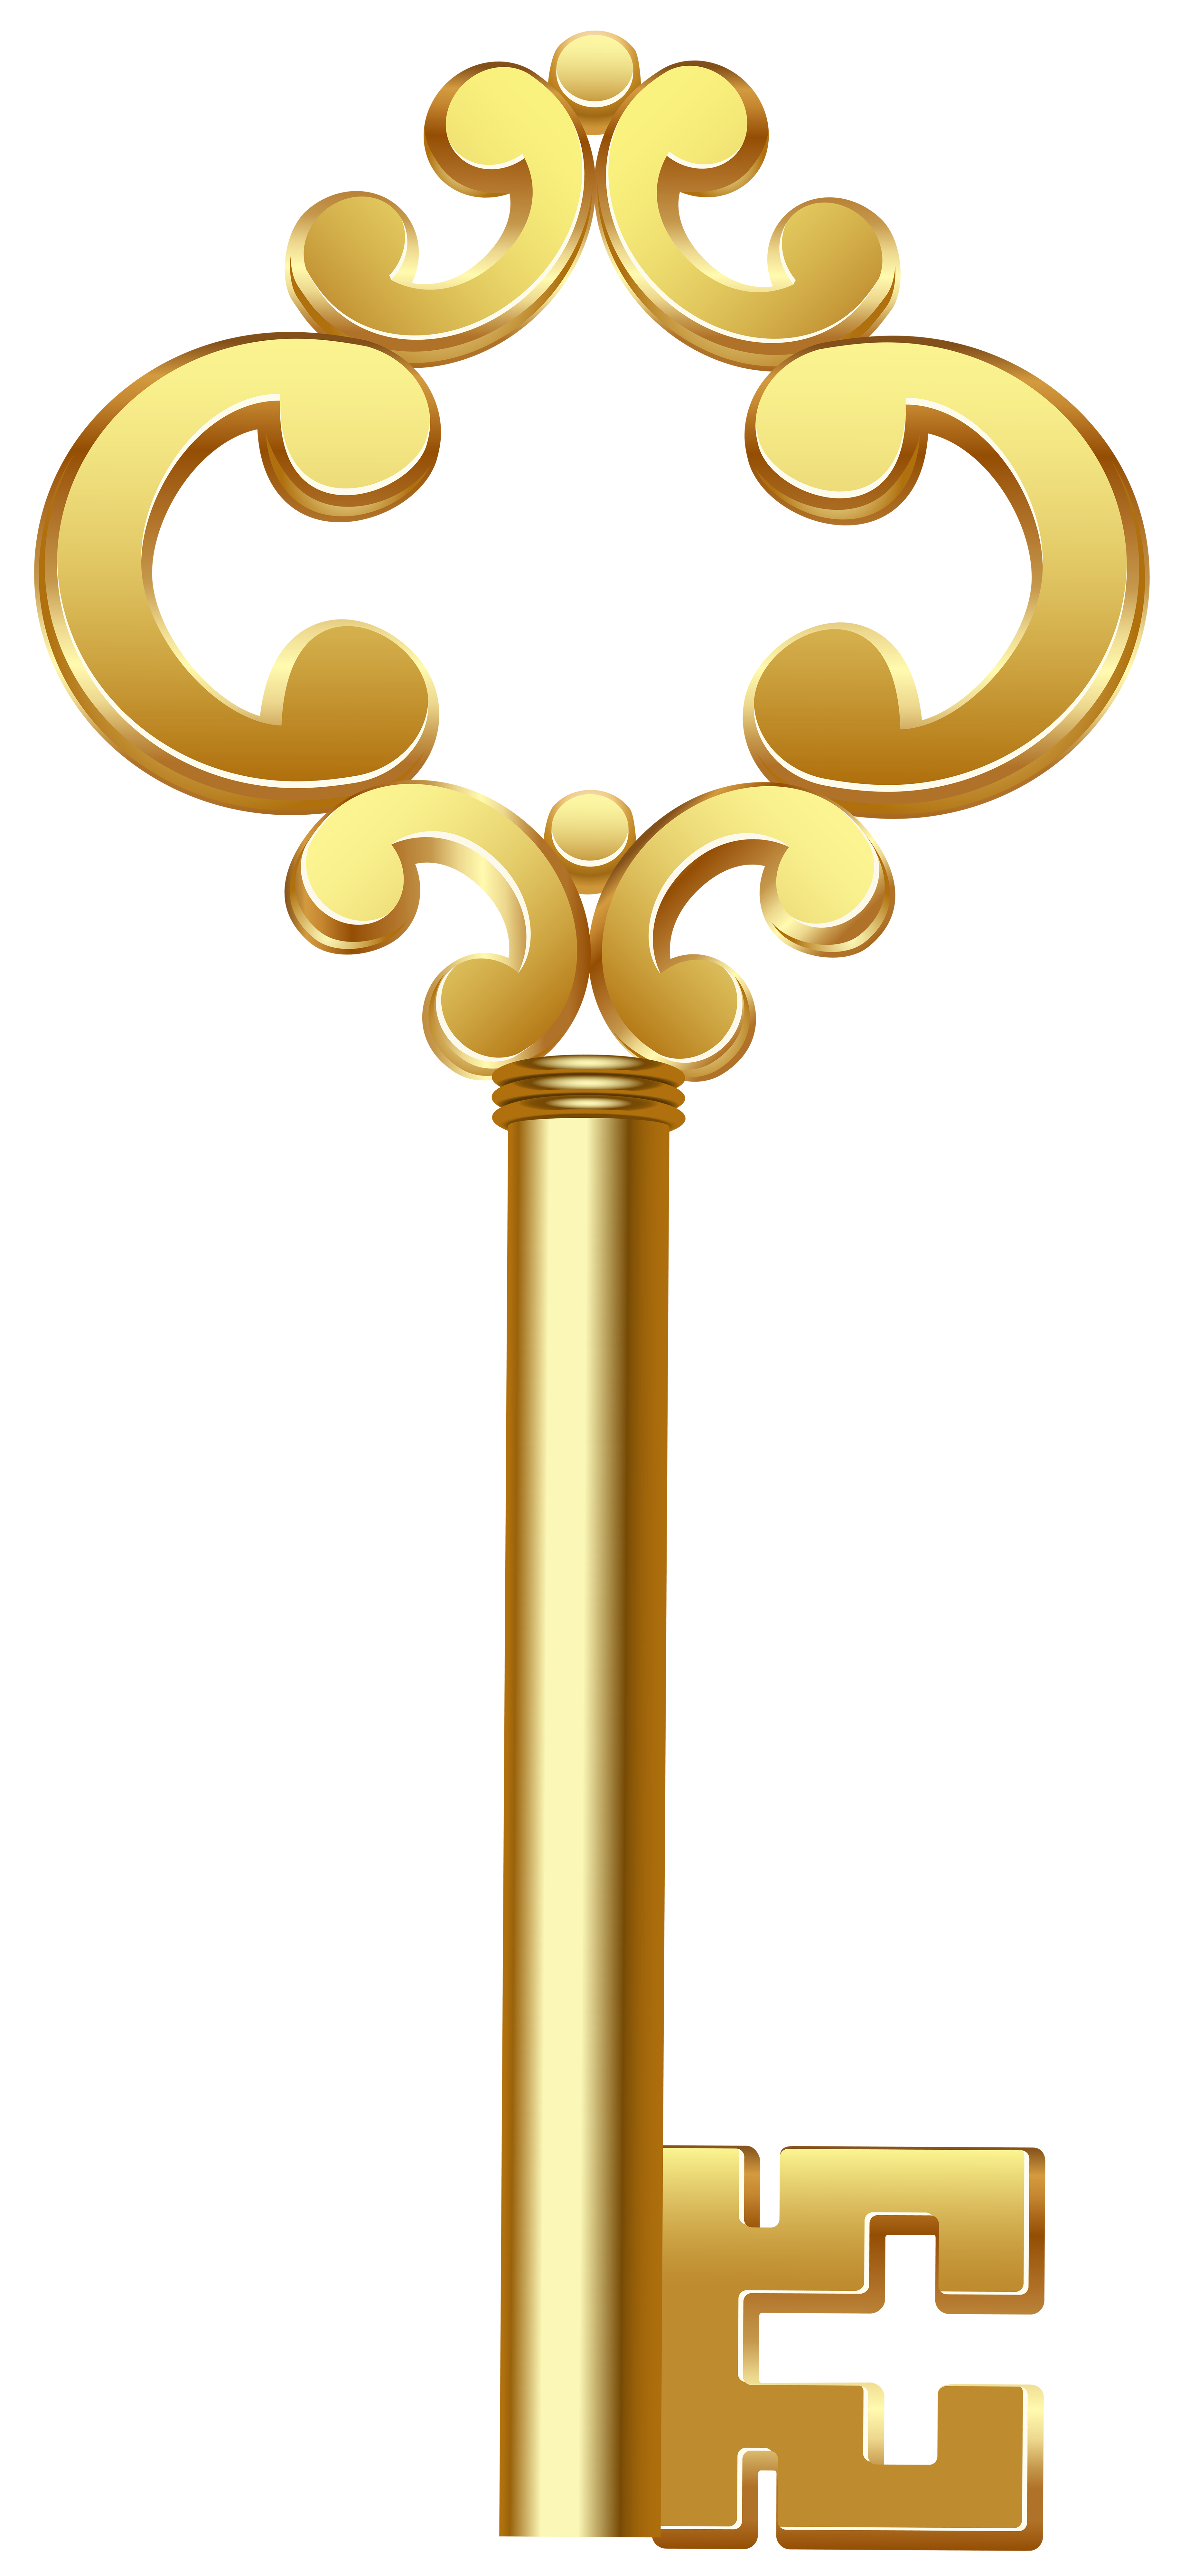 padlock clipart golden